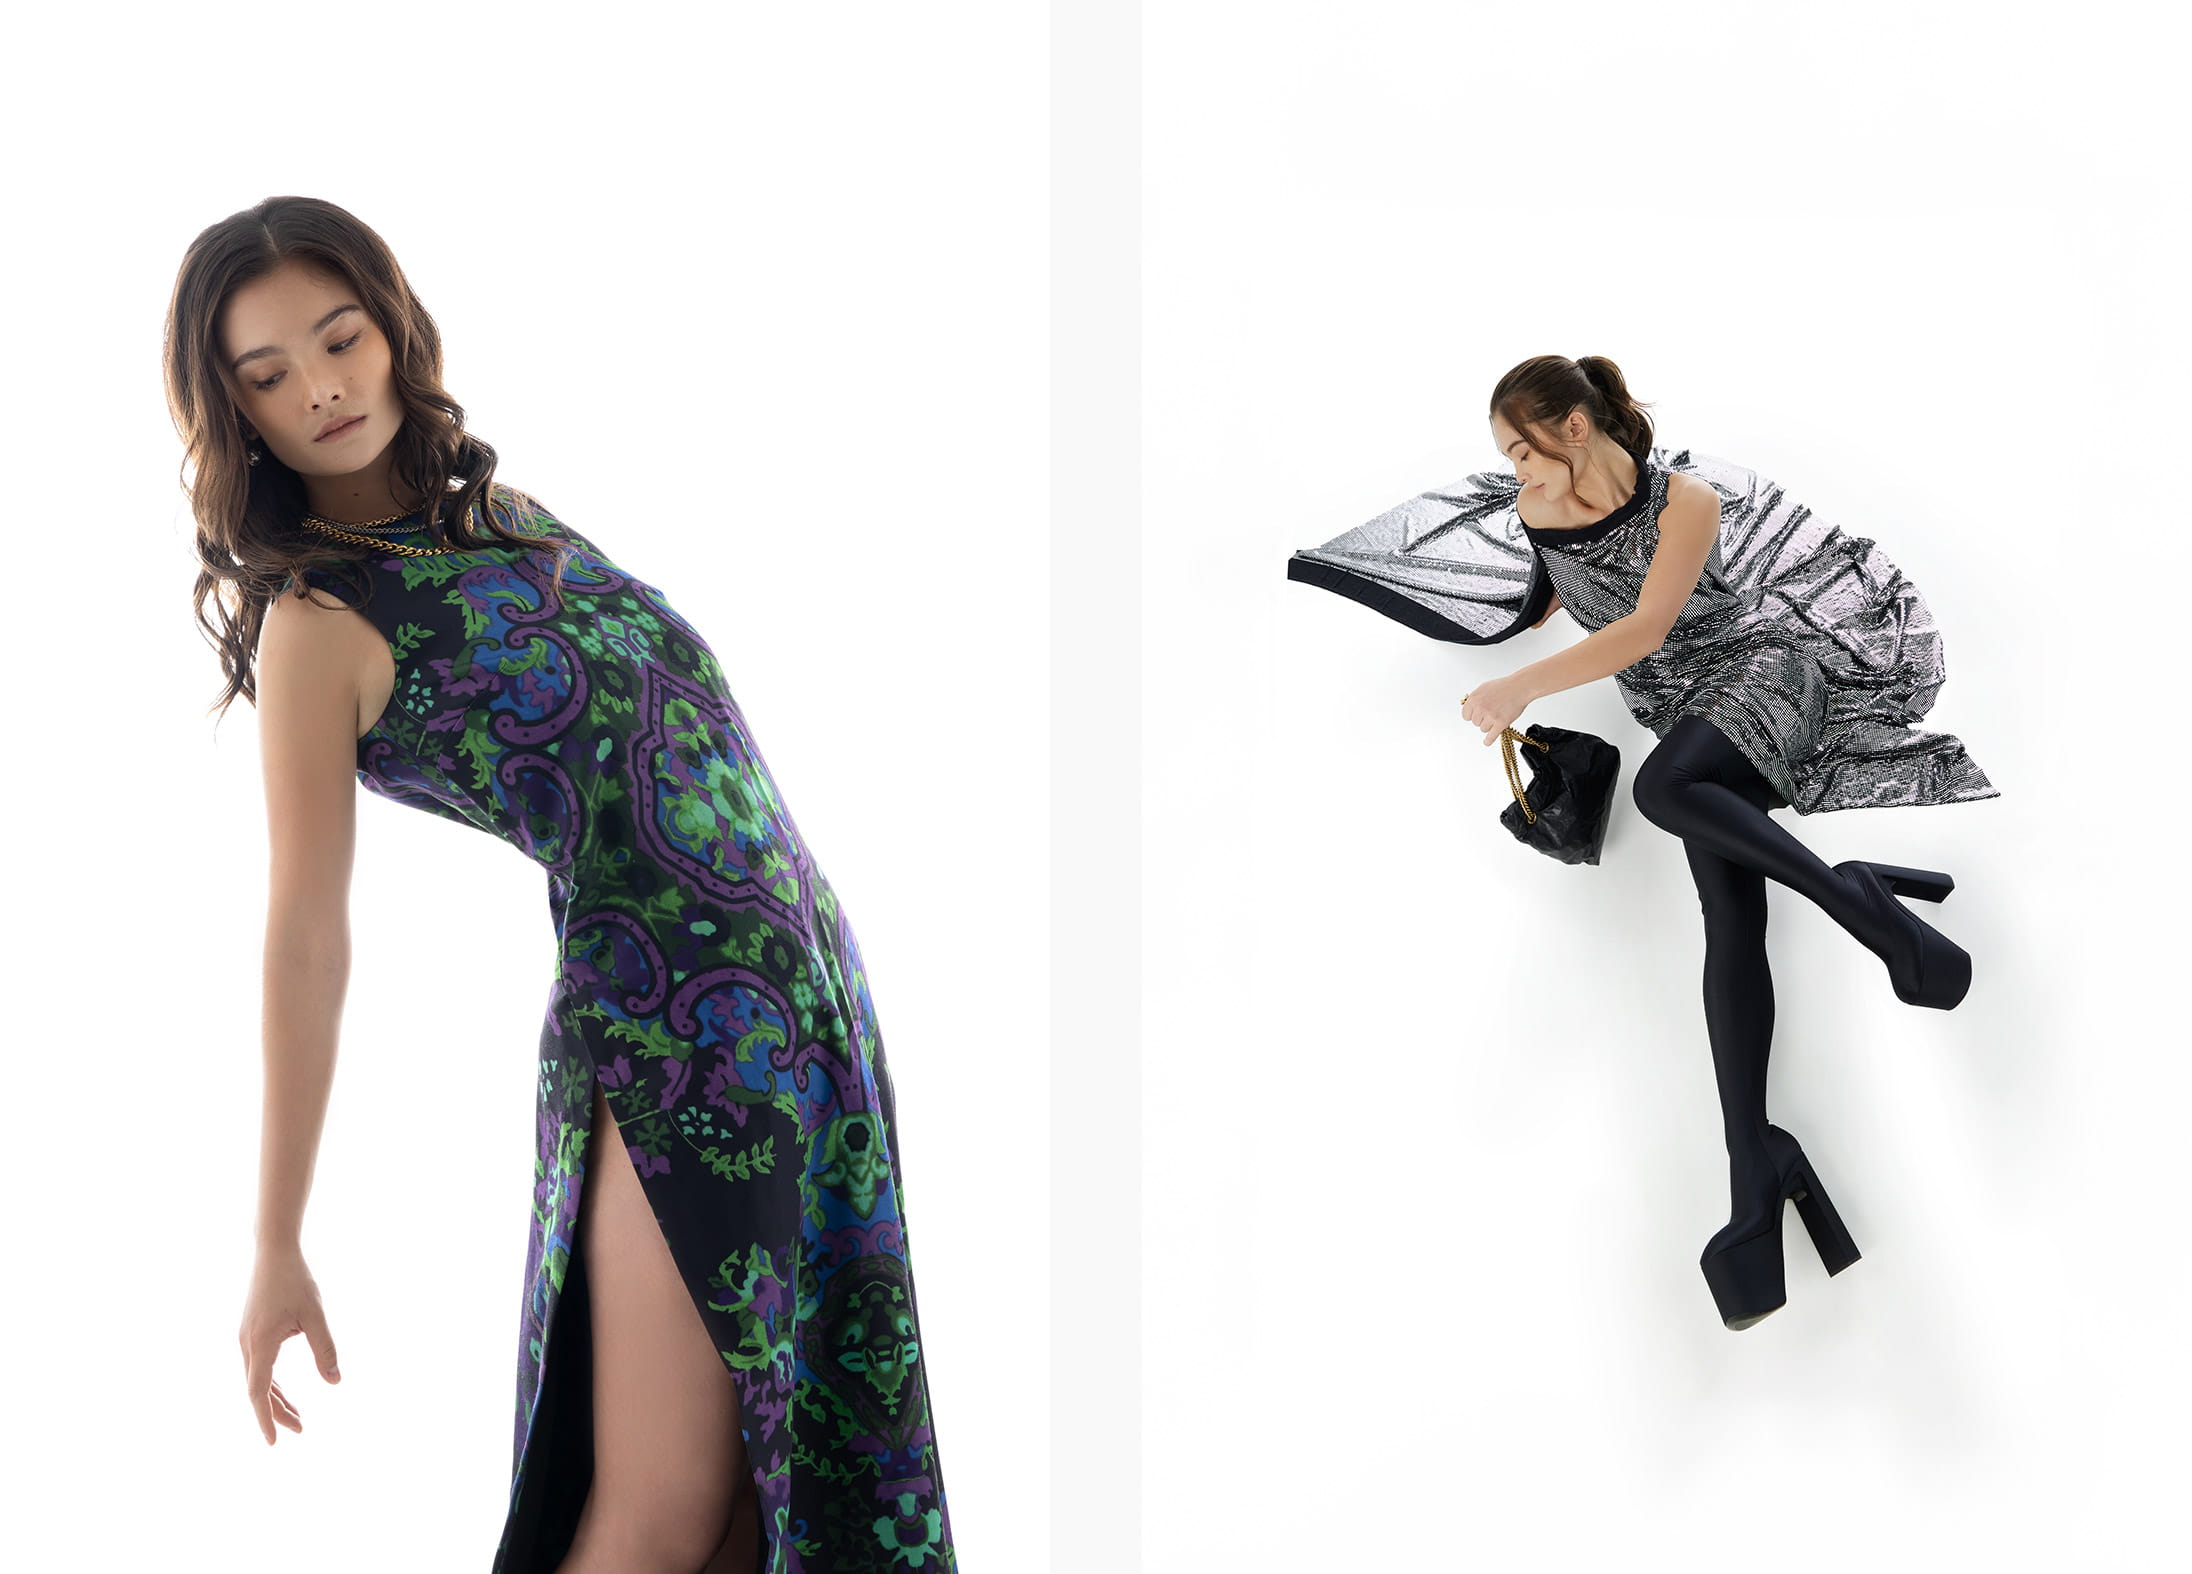 A model poses in Dior and Balenciaga